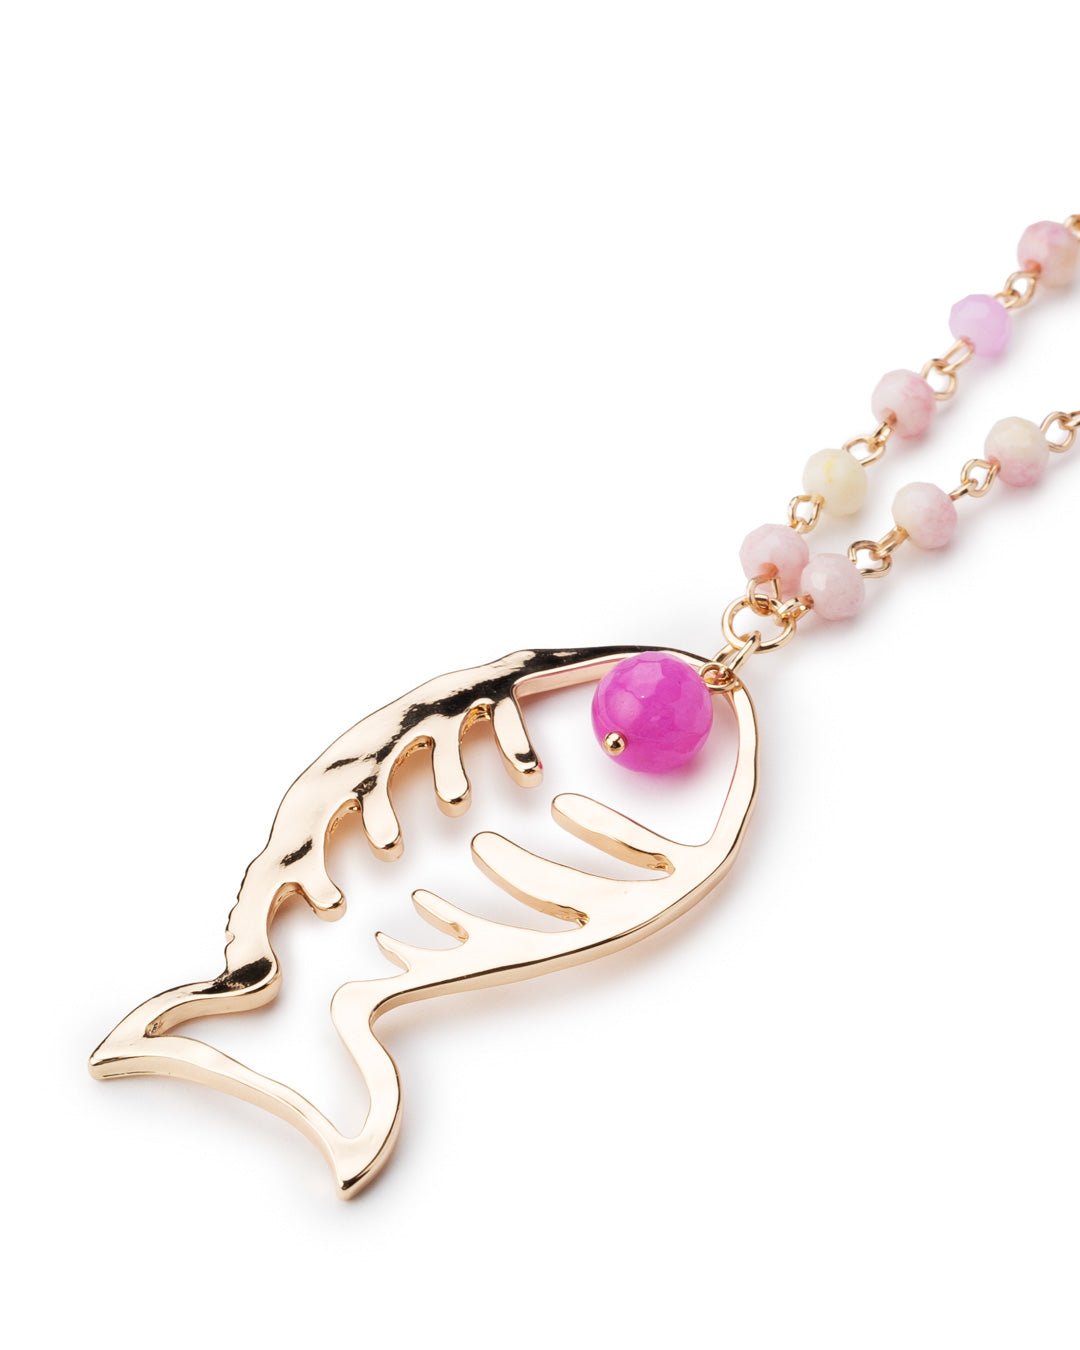 Collana lunga a catena con microcristalli tono rosa pendente a pesce - Mya Accessories